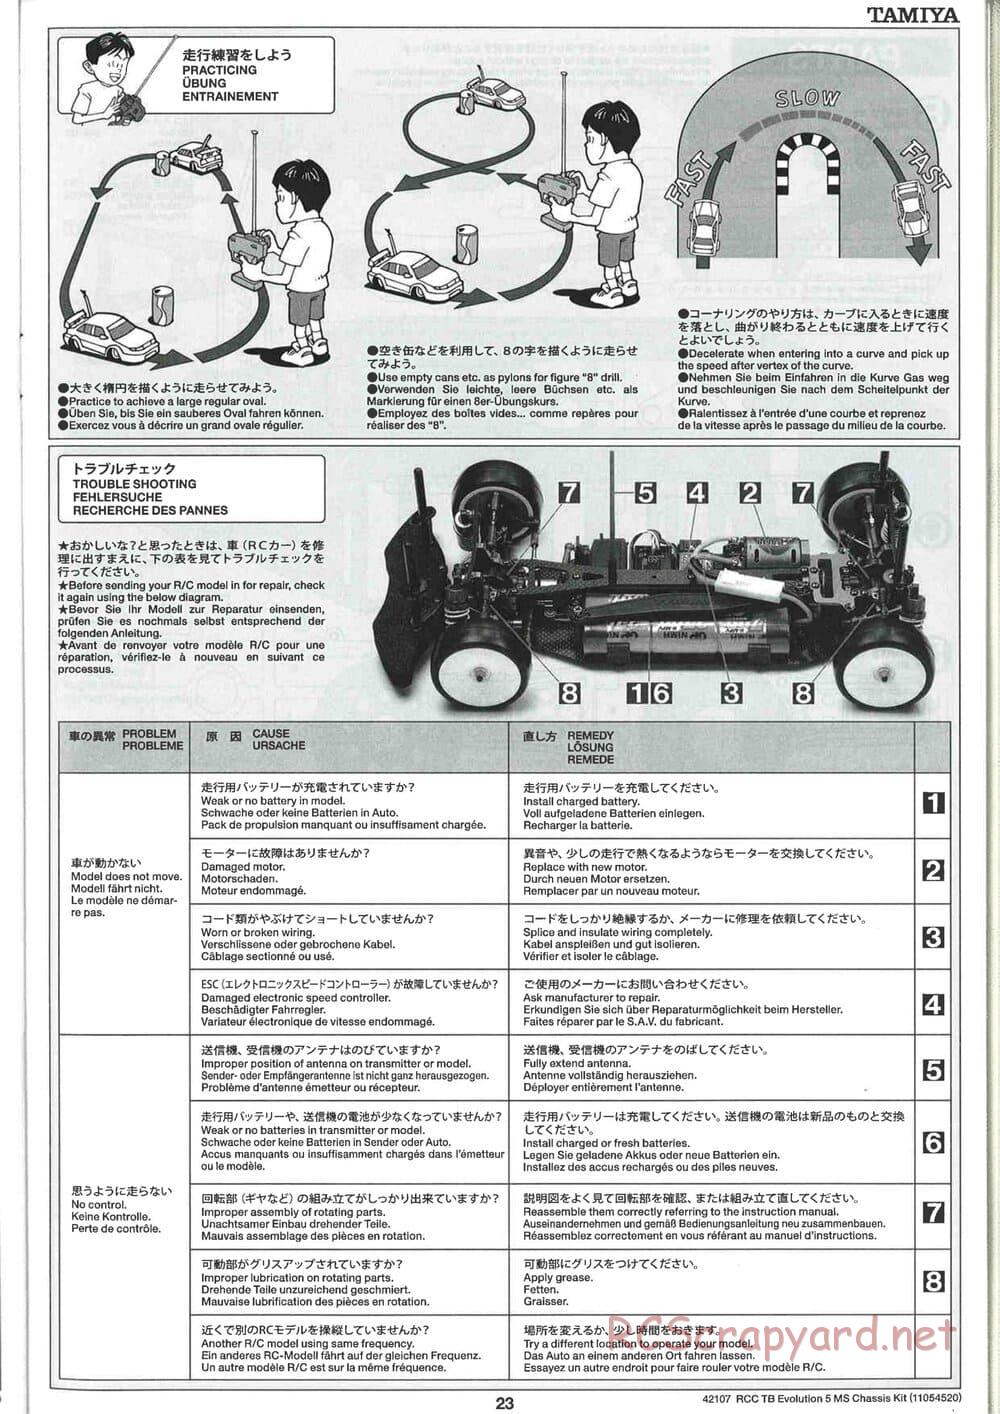 Tamiya - TB Evolution 5 MS Chassis - Manual - Page 23